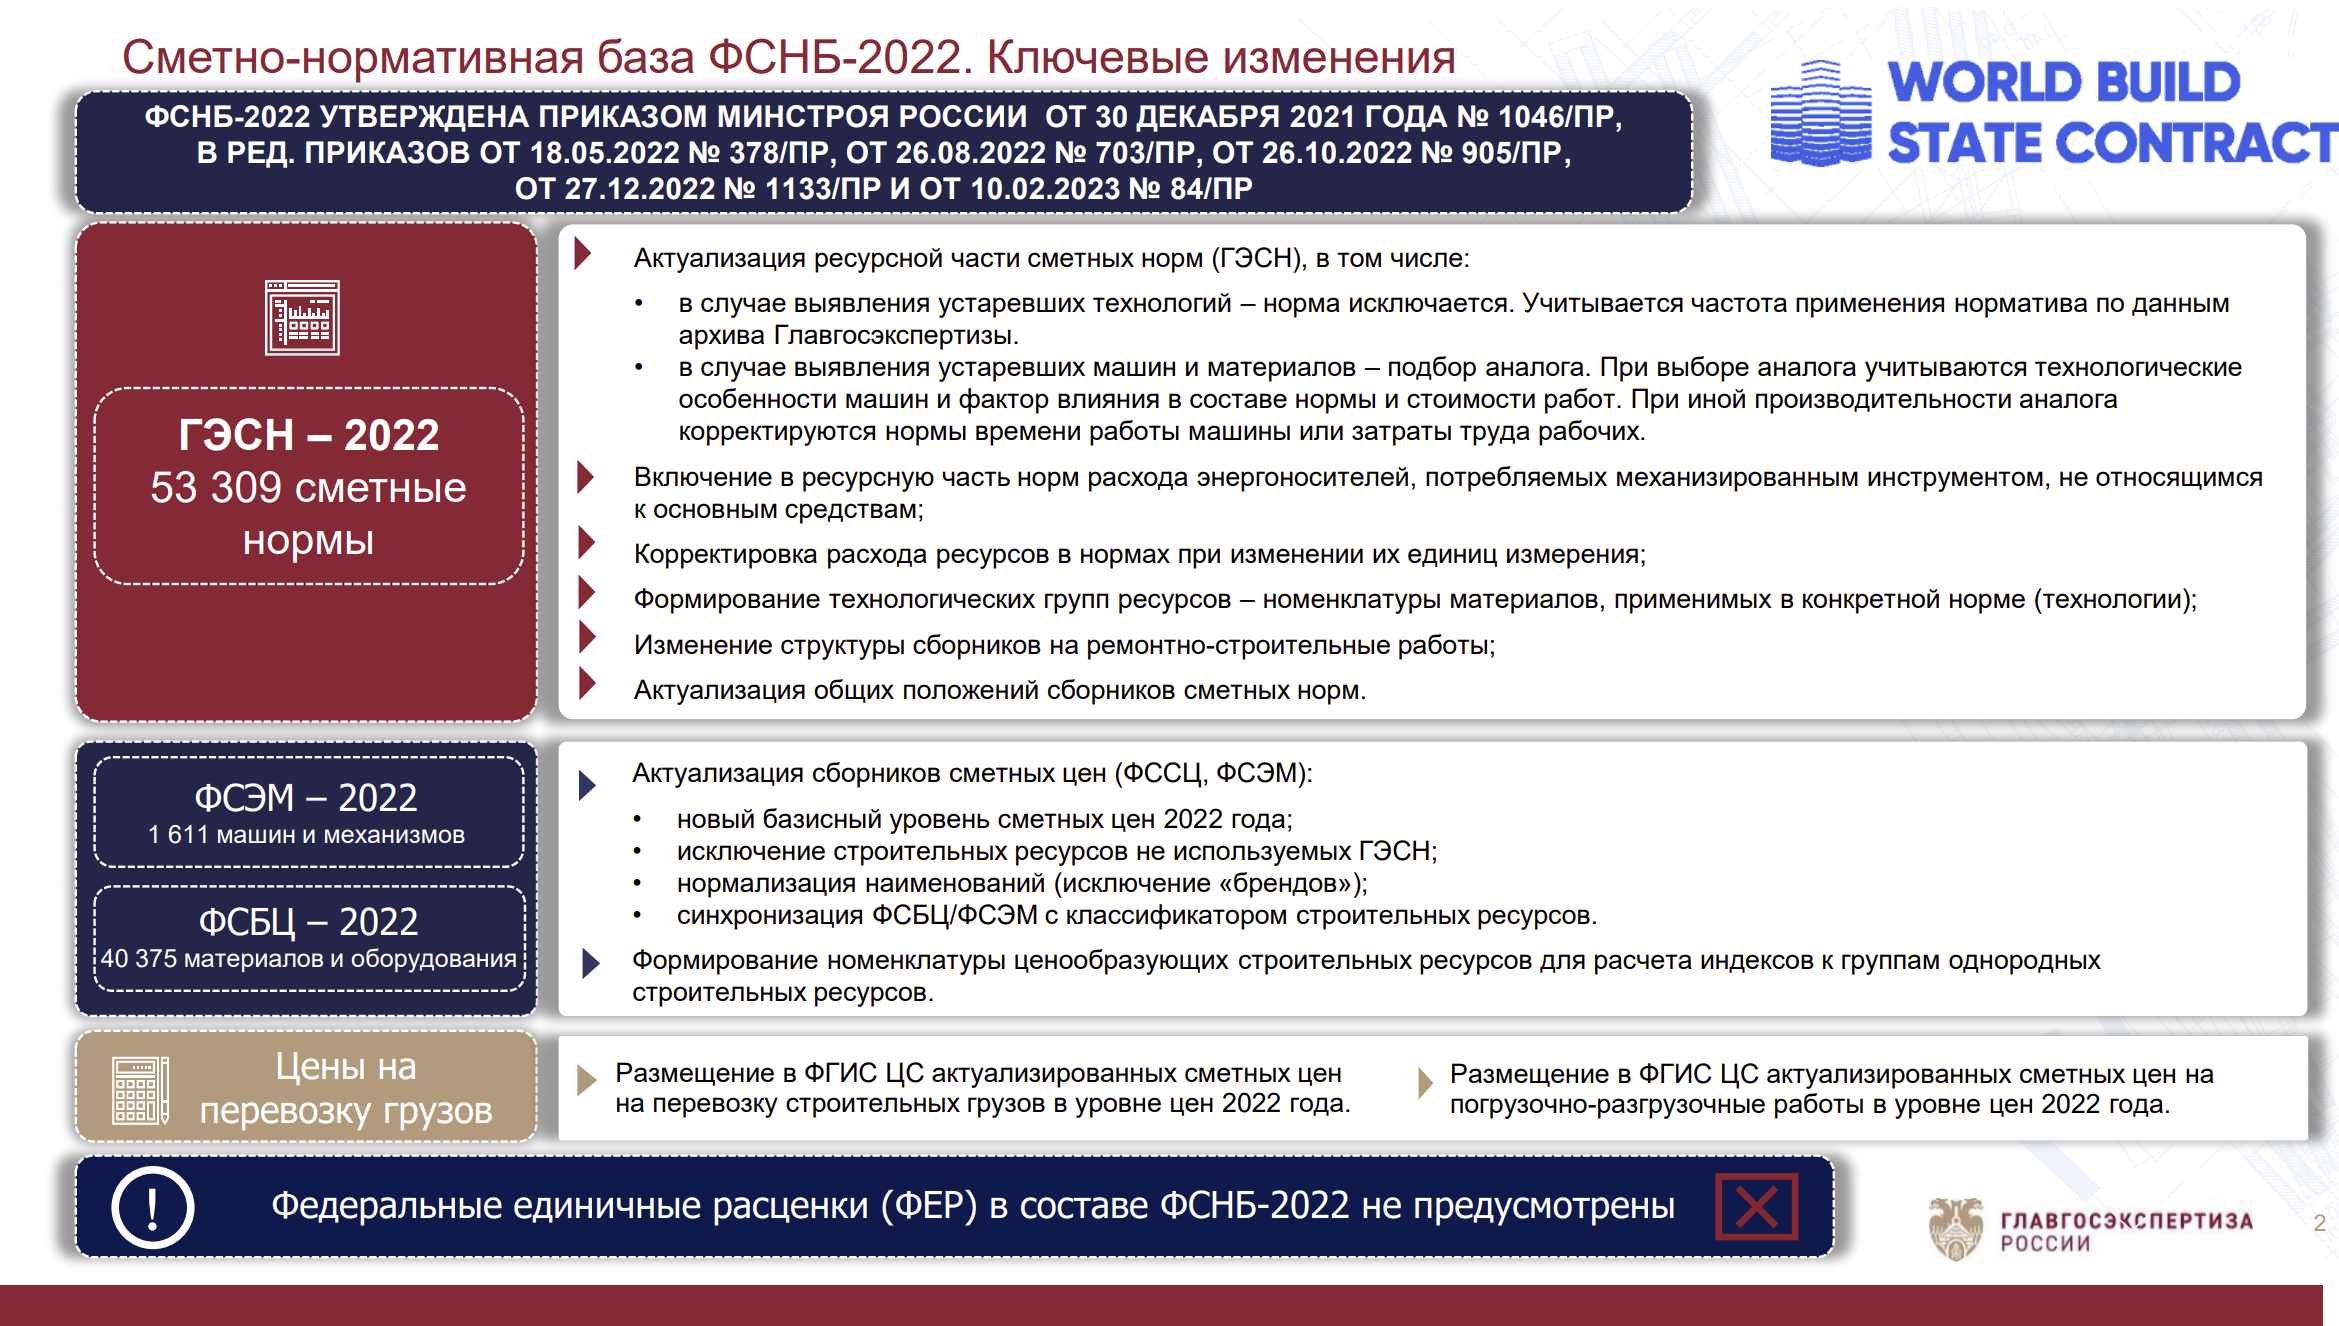 База ФСНБ-2022 в одном слайде